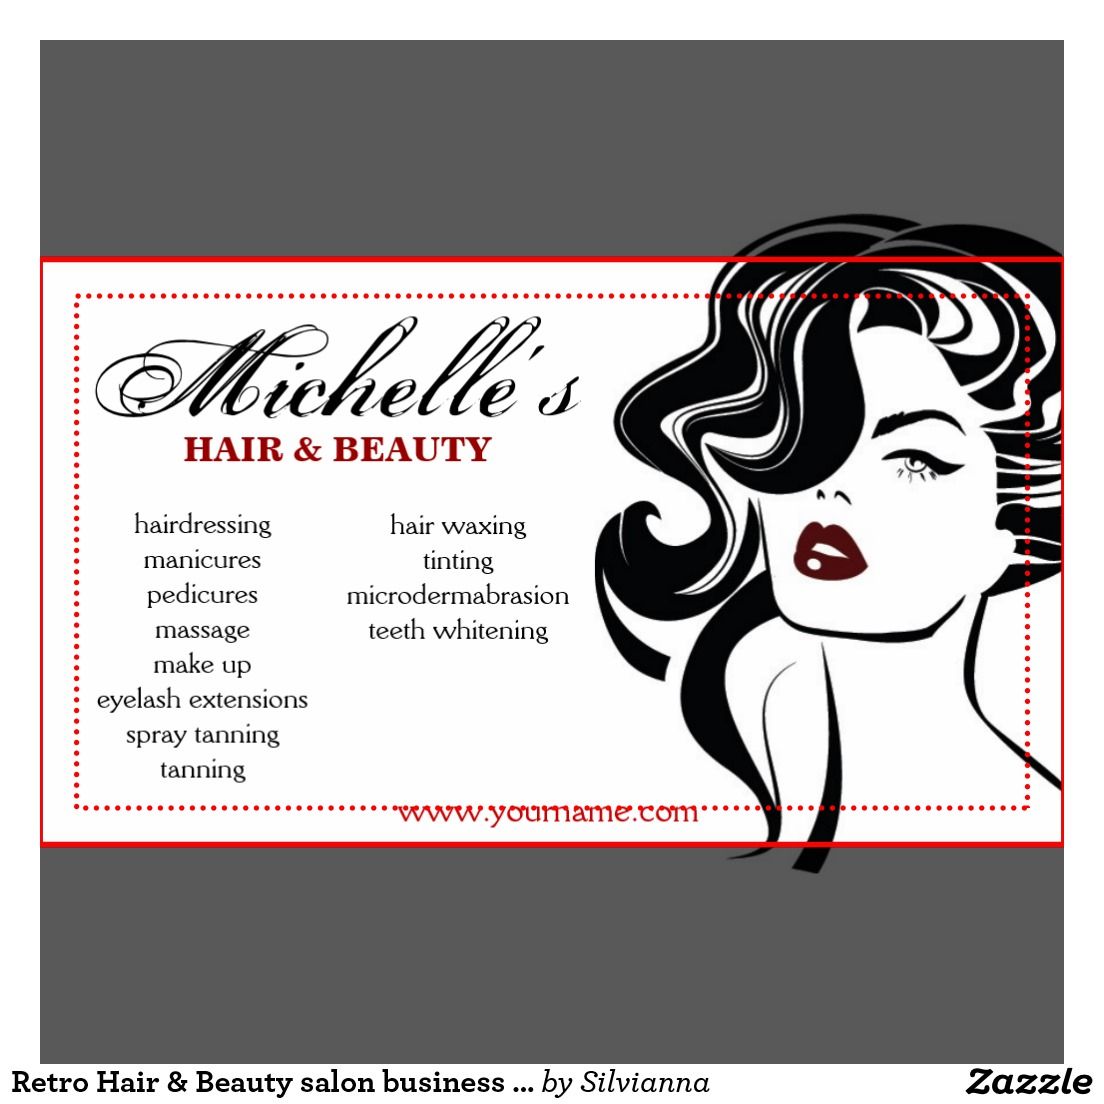 salon business cards ideas 5